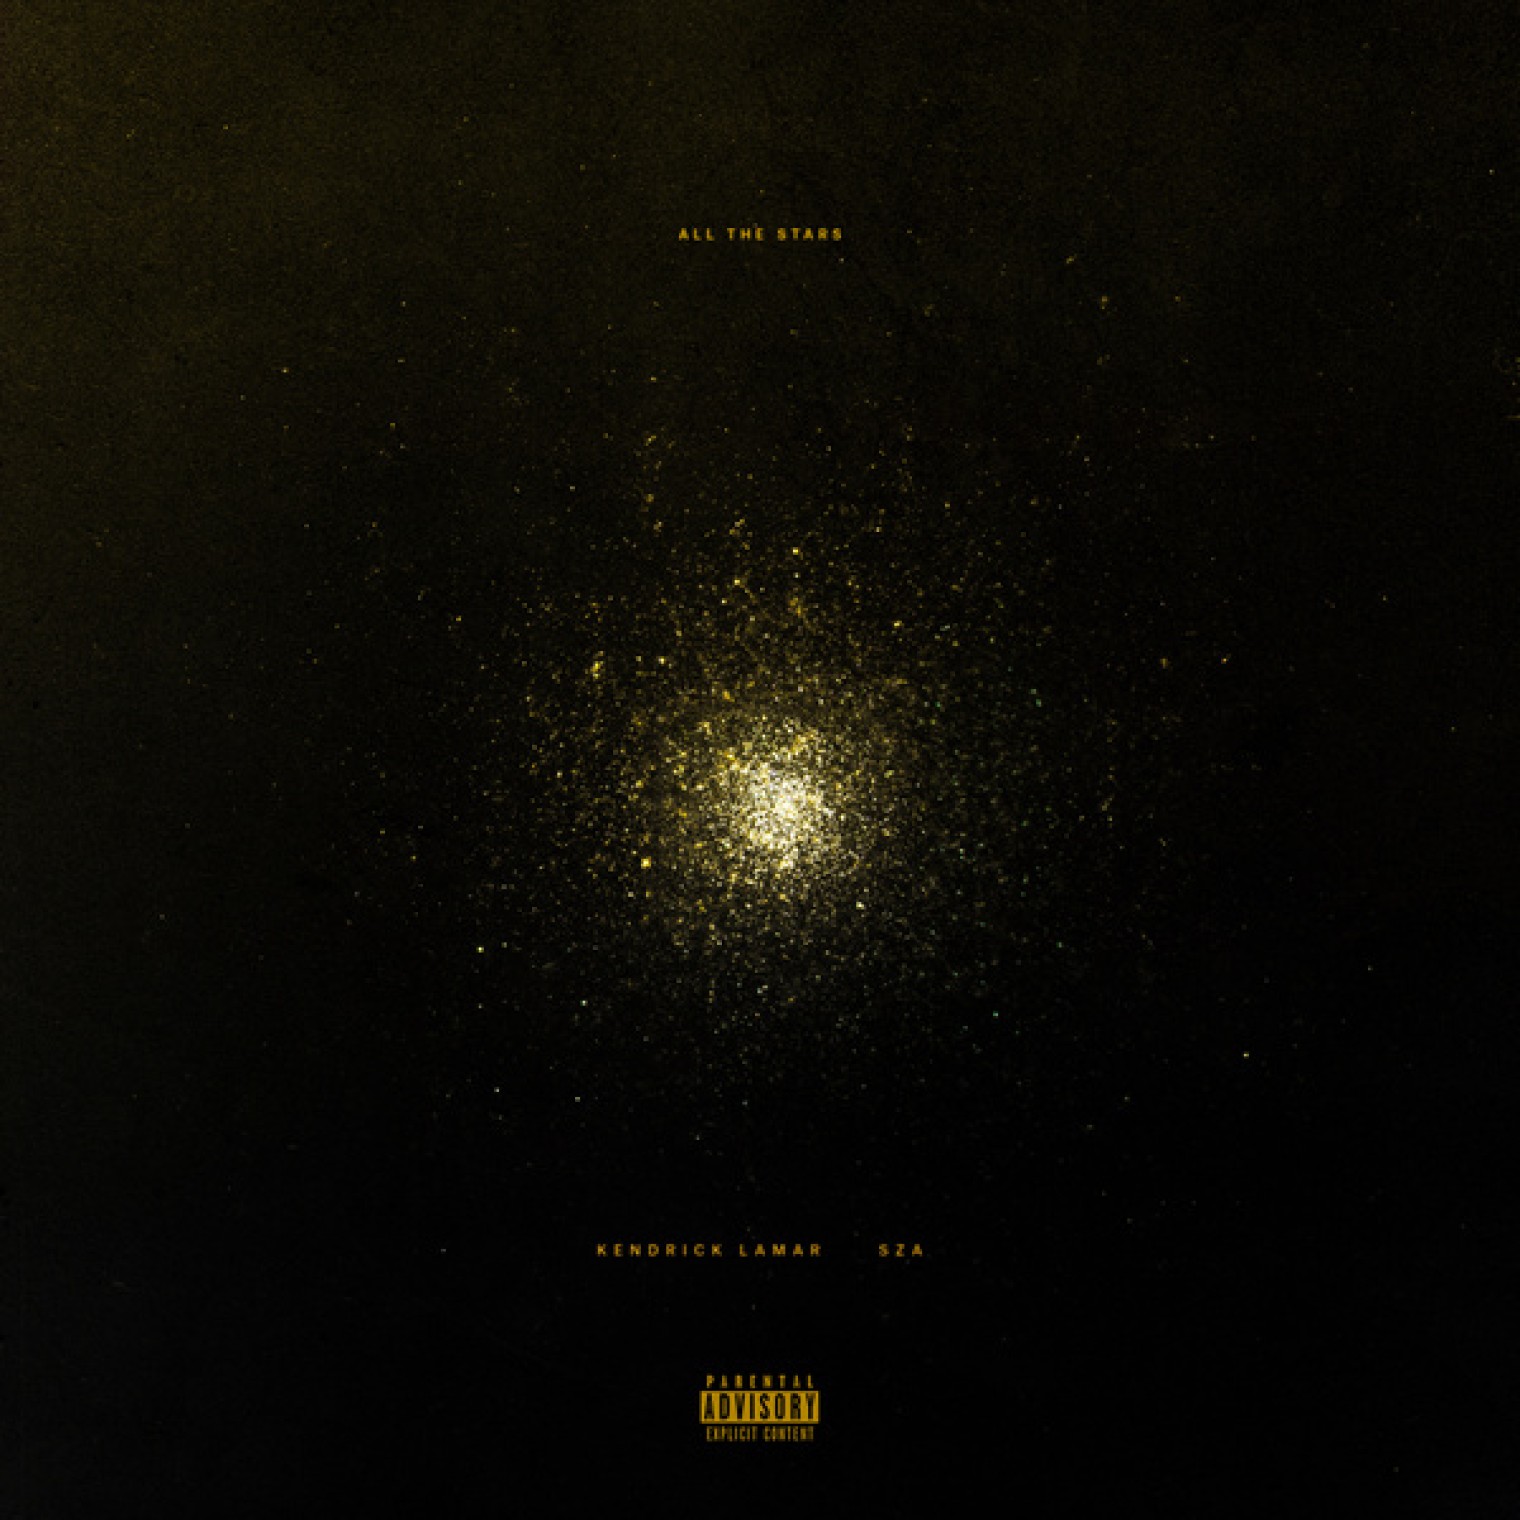 All The Stars -  Kendrick Lamar 